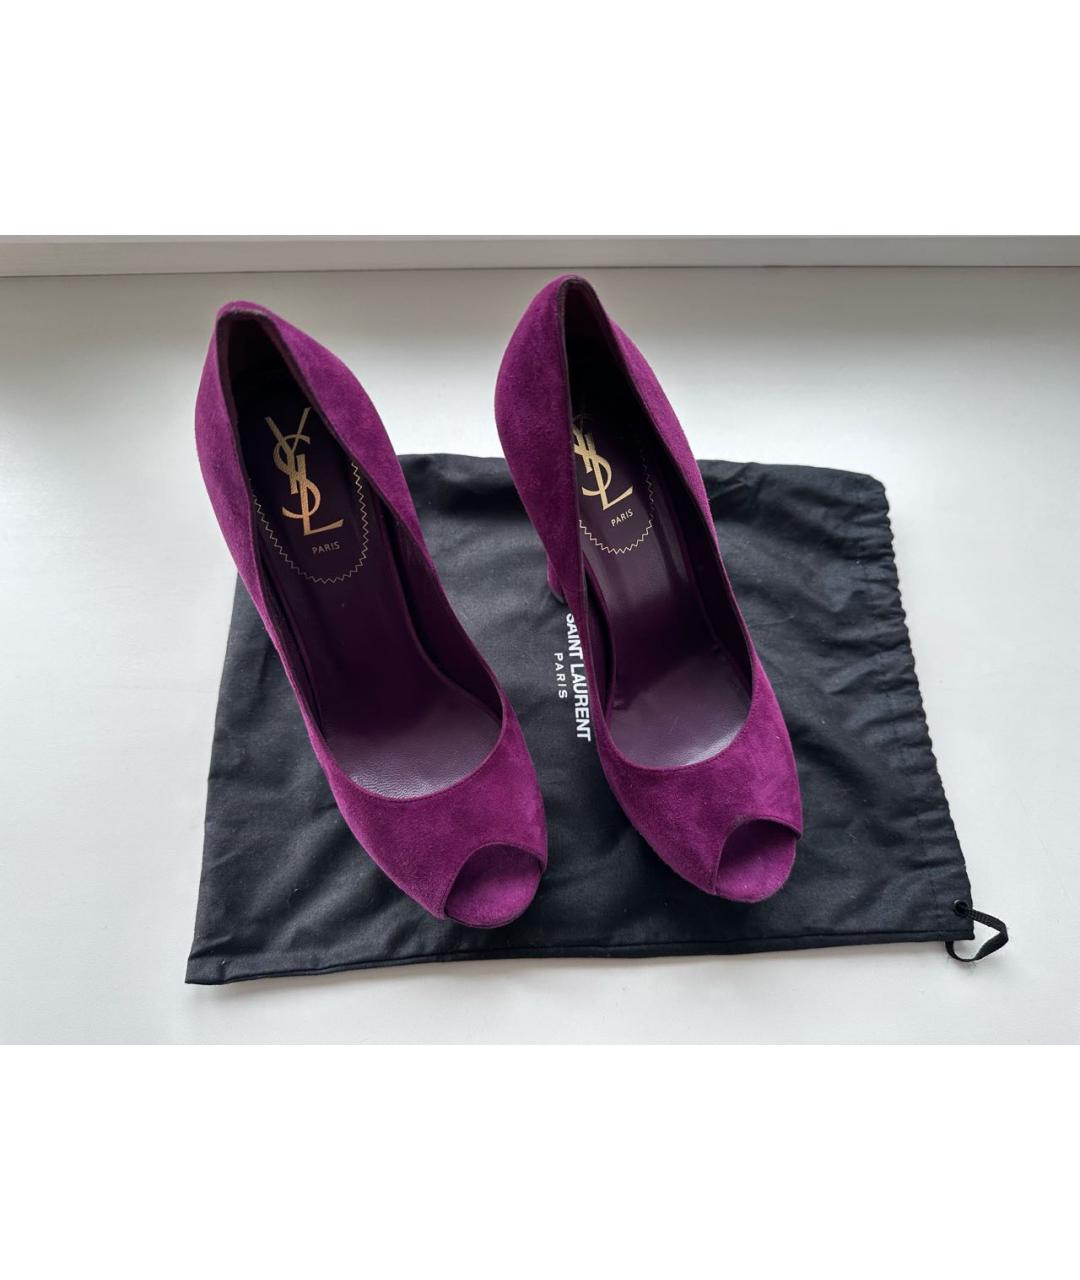 SAINT LAURENT Фиолетовые замшевые туфли, фото 2